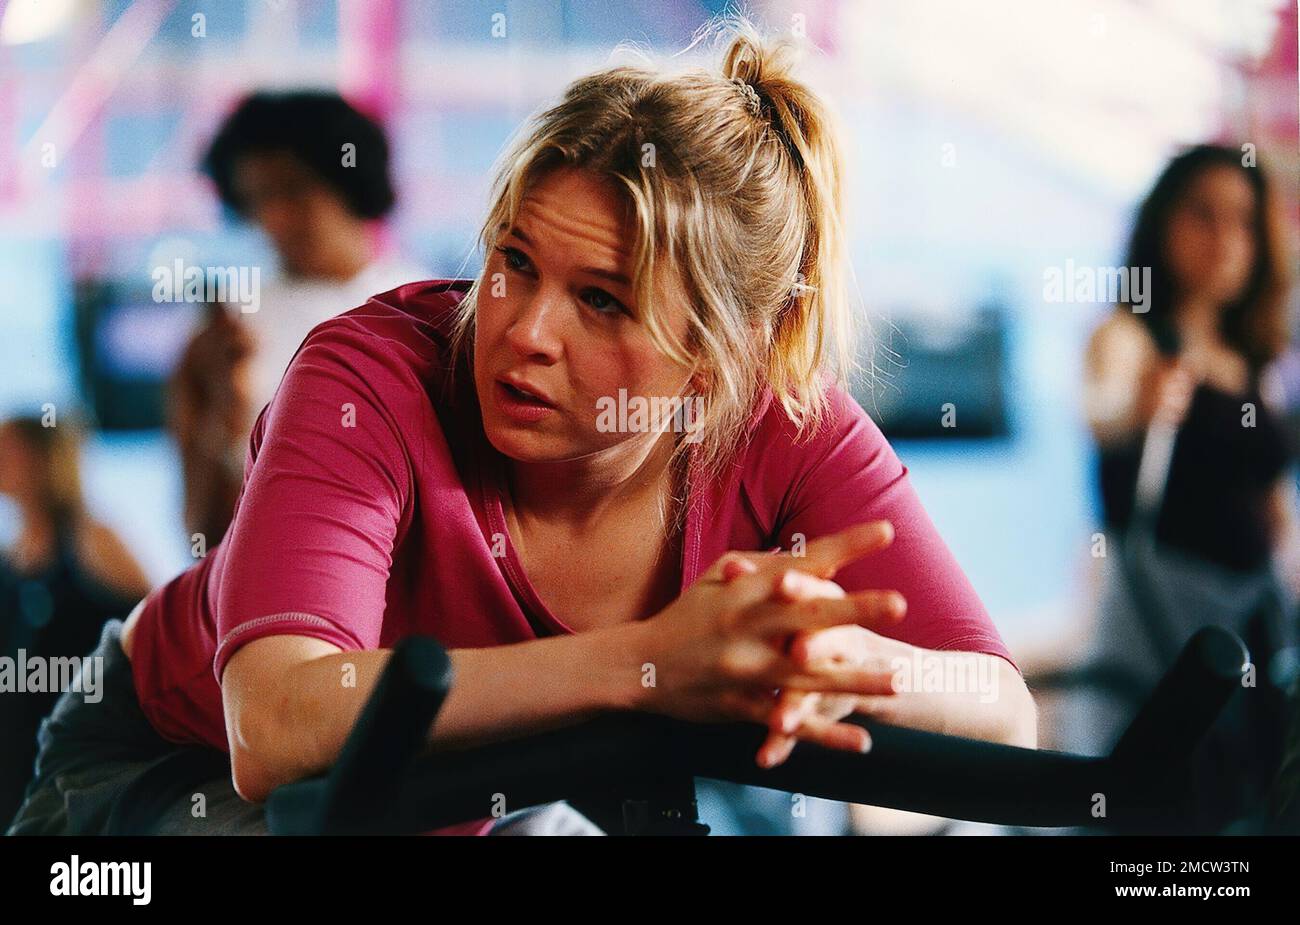 RENEE ZELLWEGER in BRIDGET JONES'S DIARY (2001), directed by SHARON MAGUIRE. Credit: UNIVERSAL PICTURES / Album Stock Photo